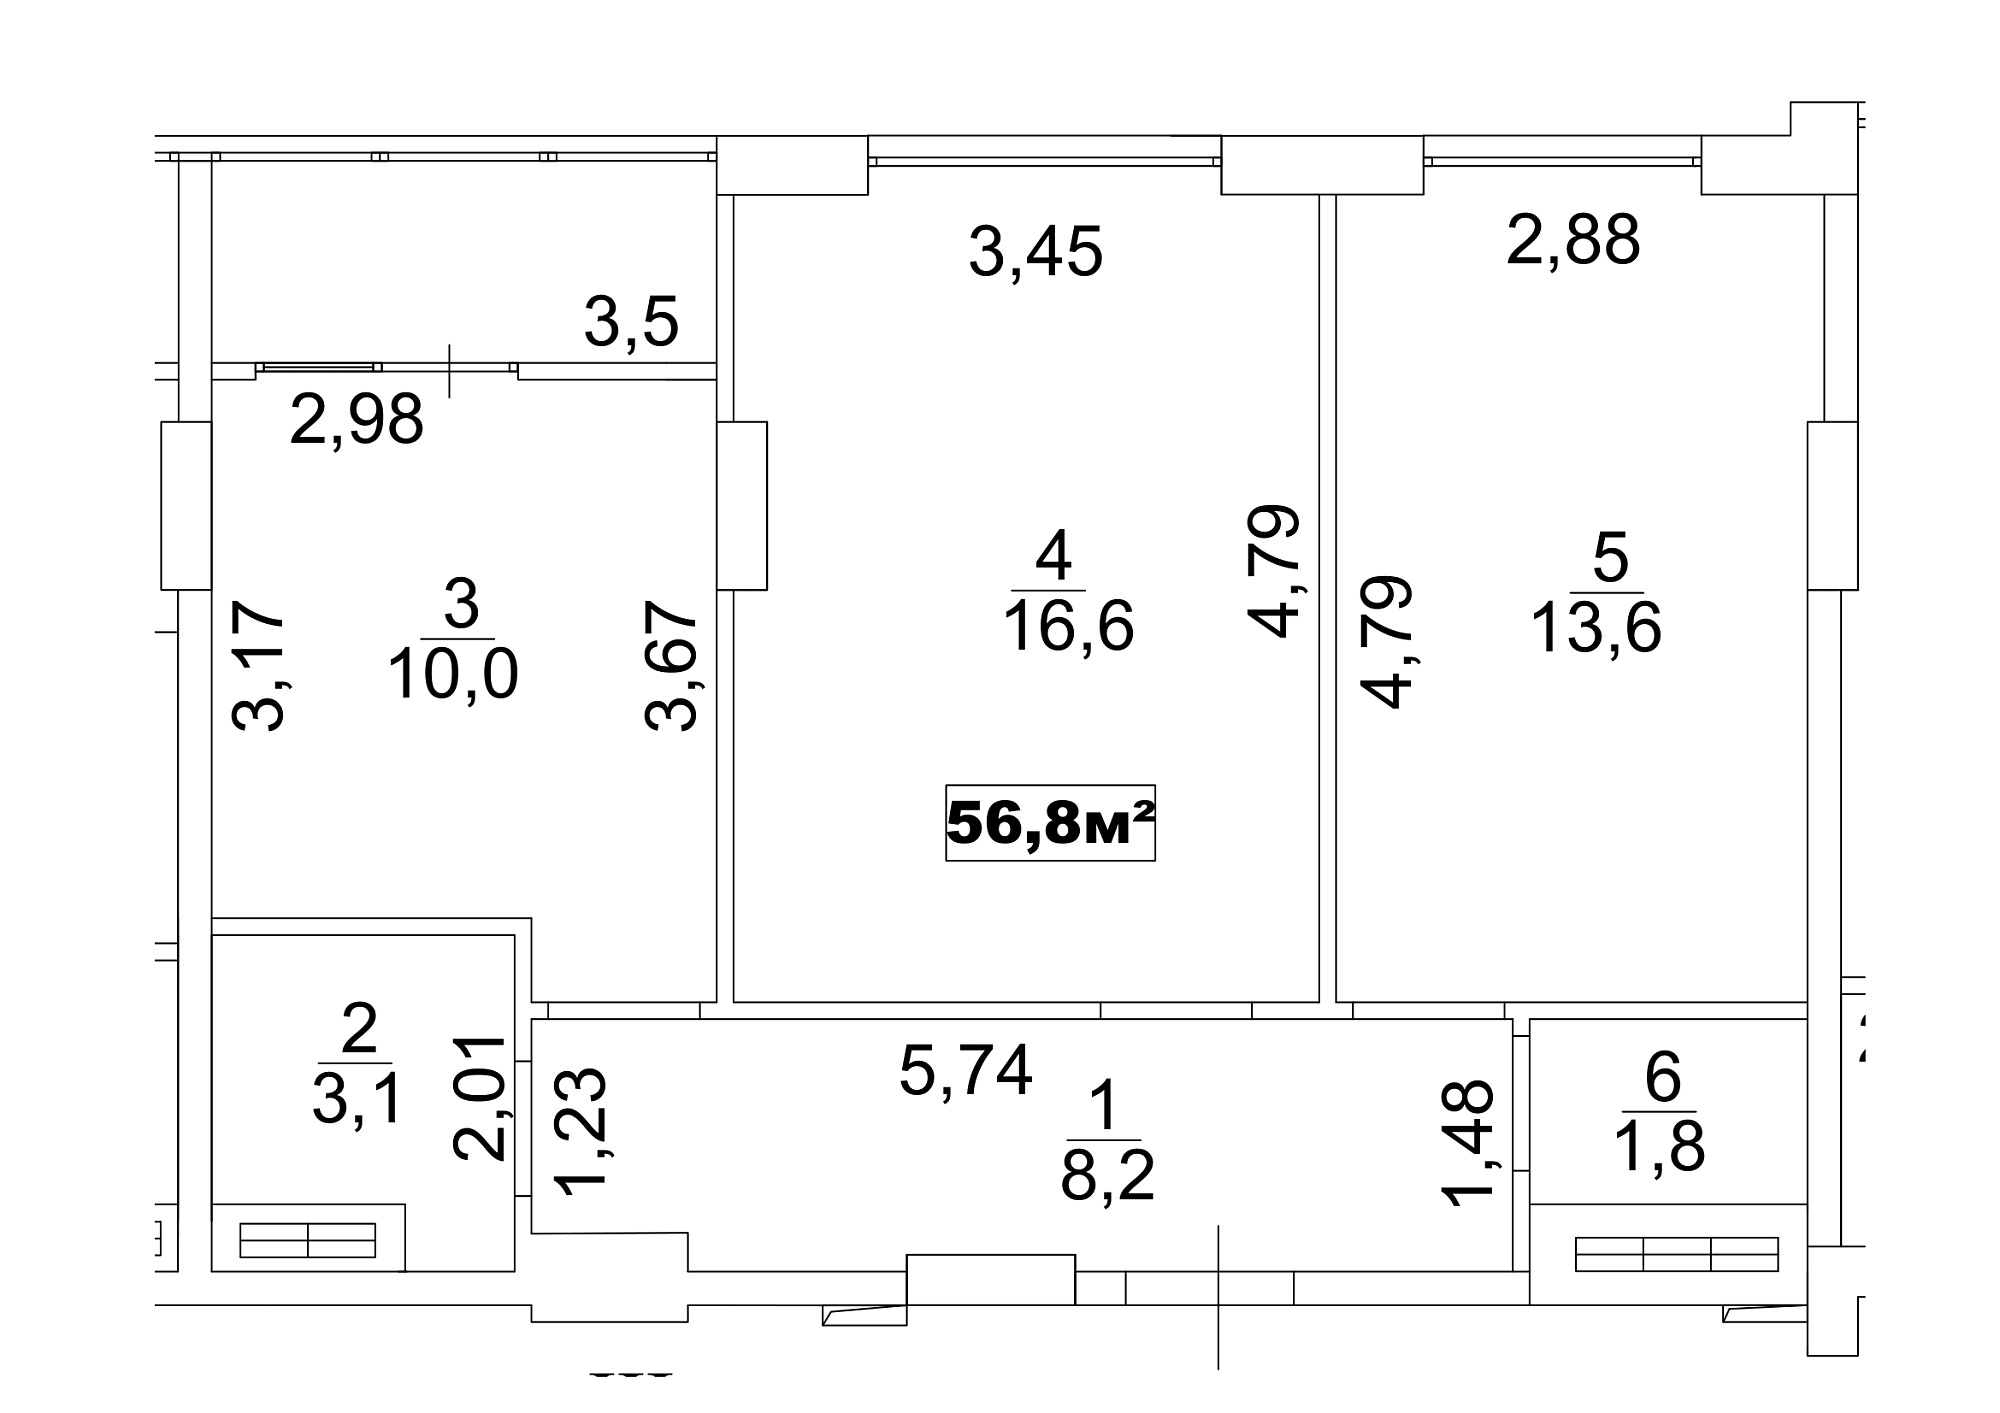 Планировка 2-к квартира площей 56.8м2, AB-13-02/00010.